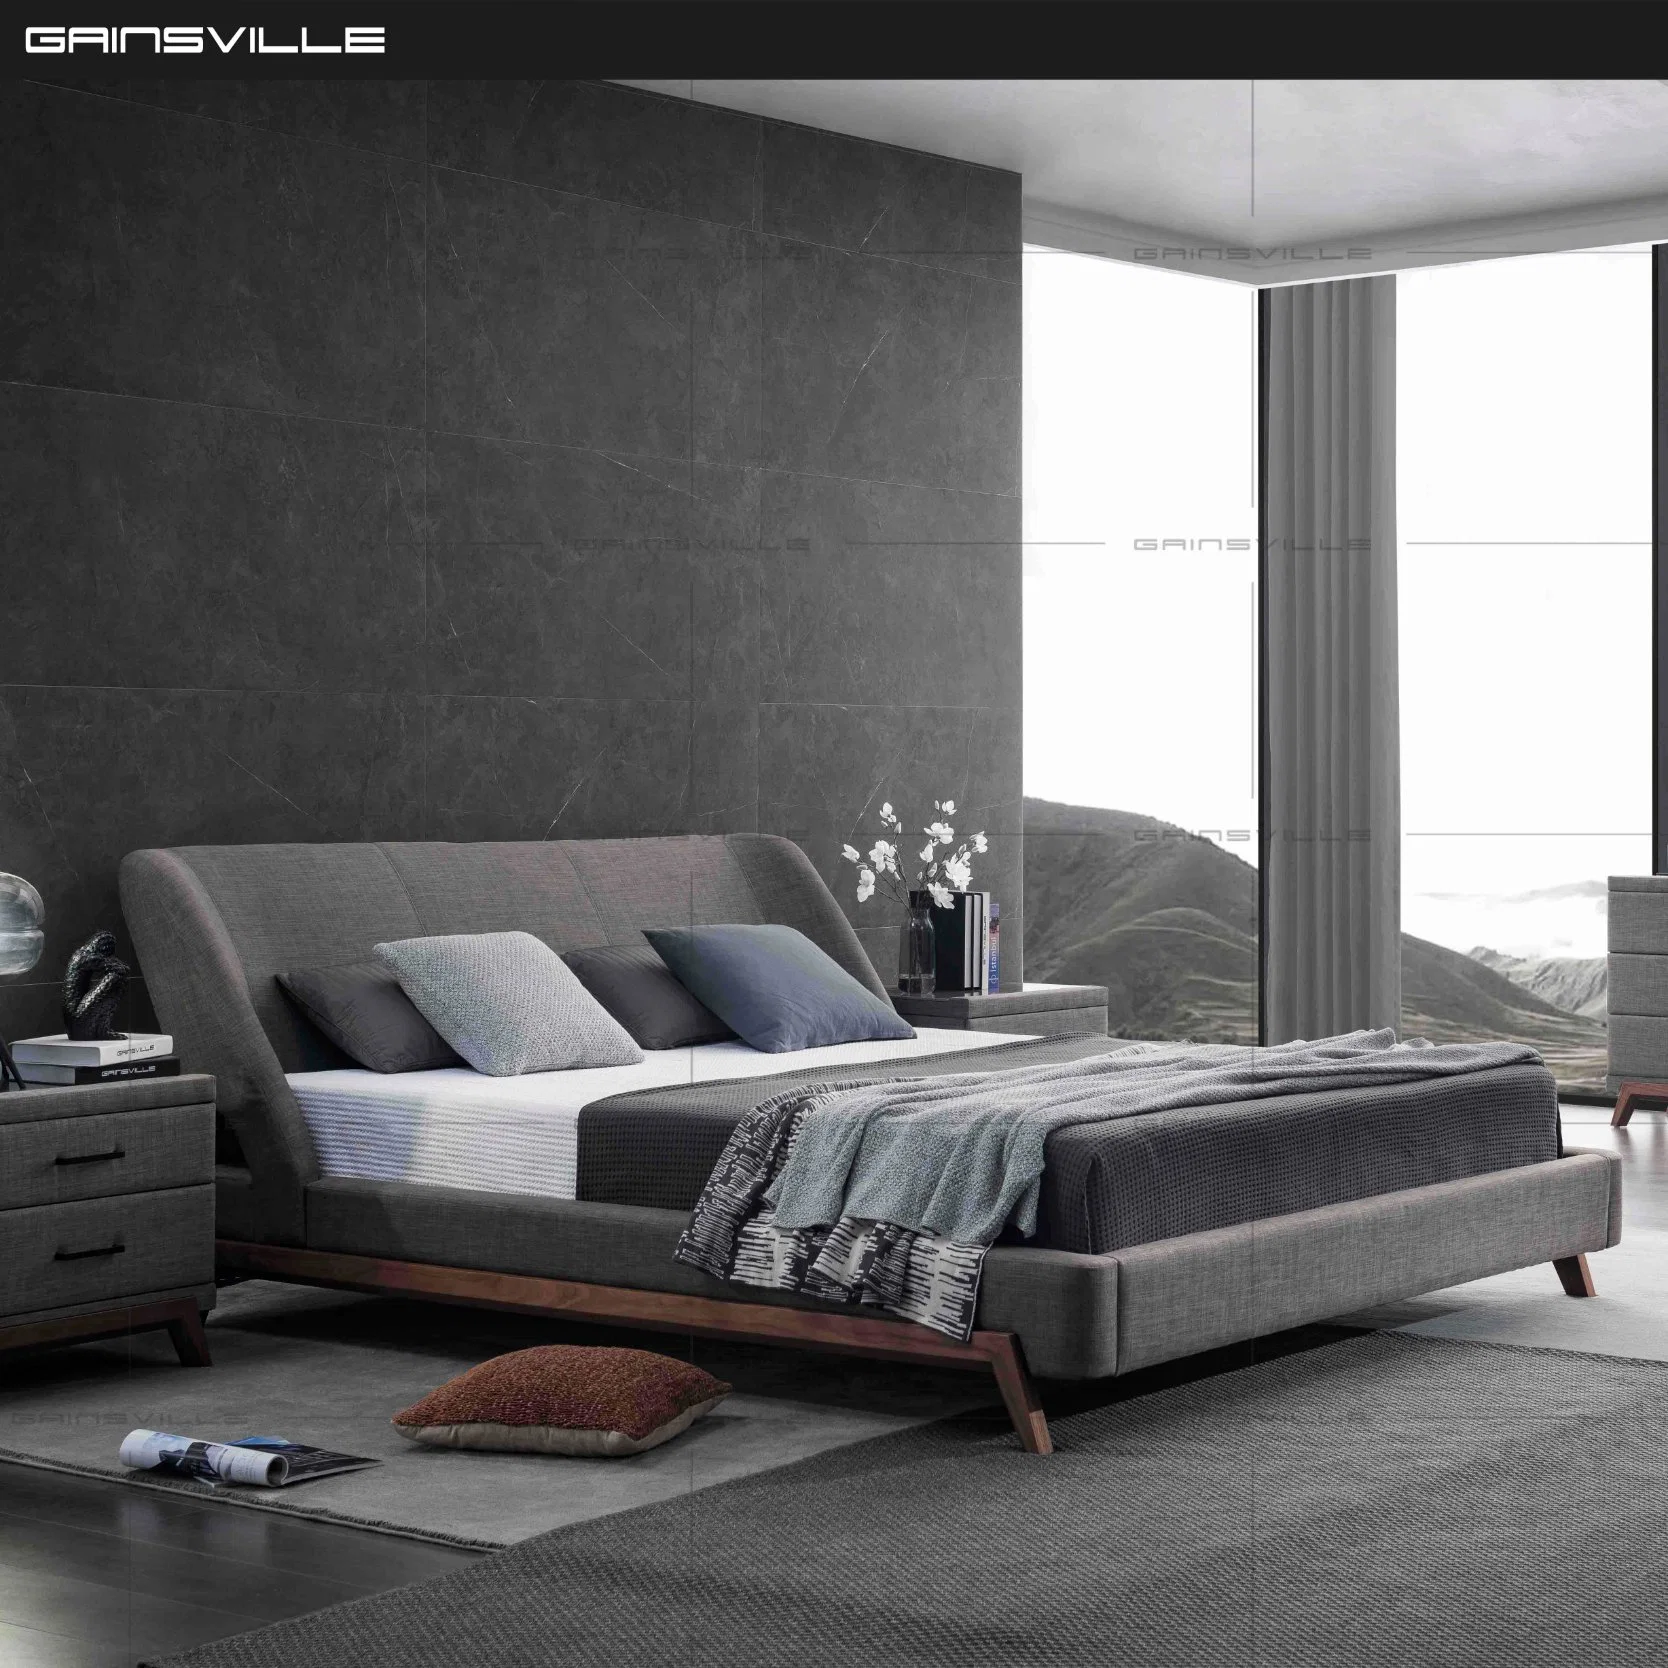 Cama King Size luxo moderno com cama com Nice folheado de madeira de nogueira pernas para Mobiliário doméstico